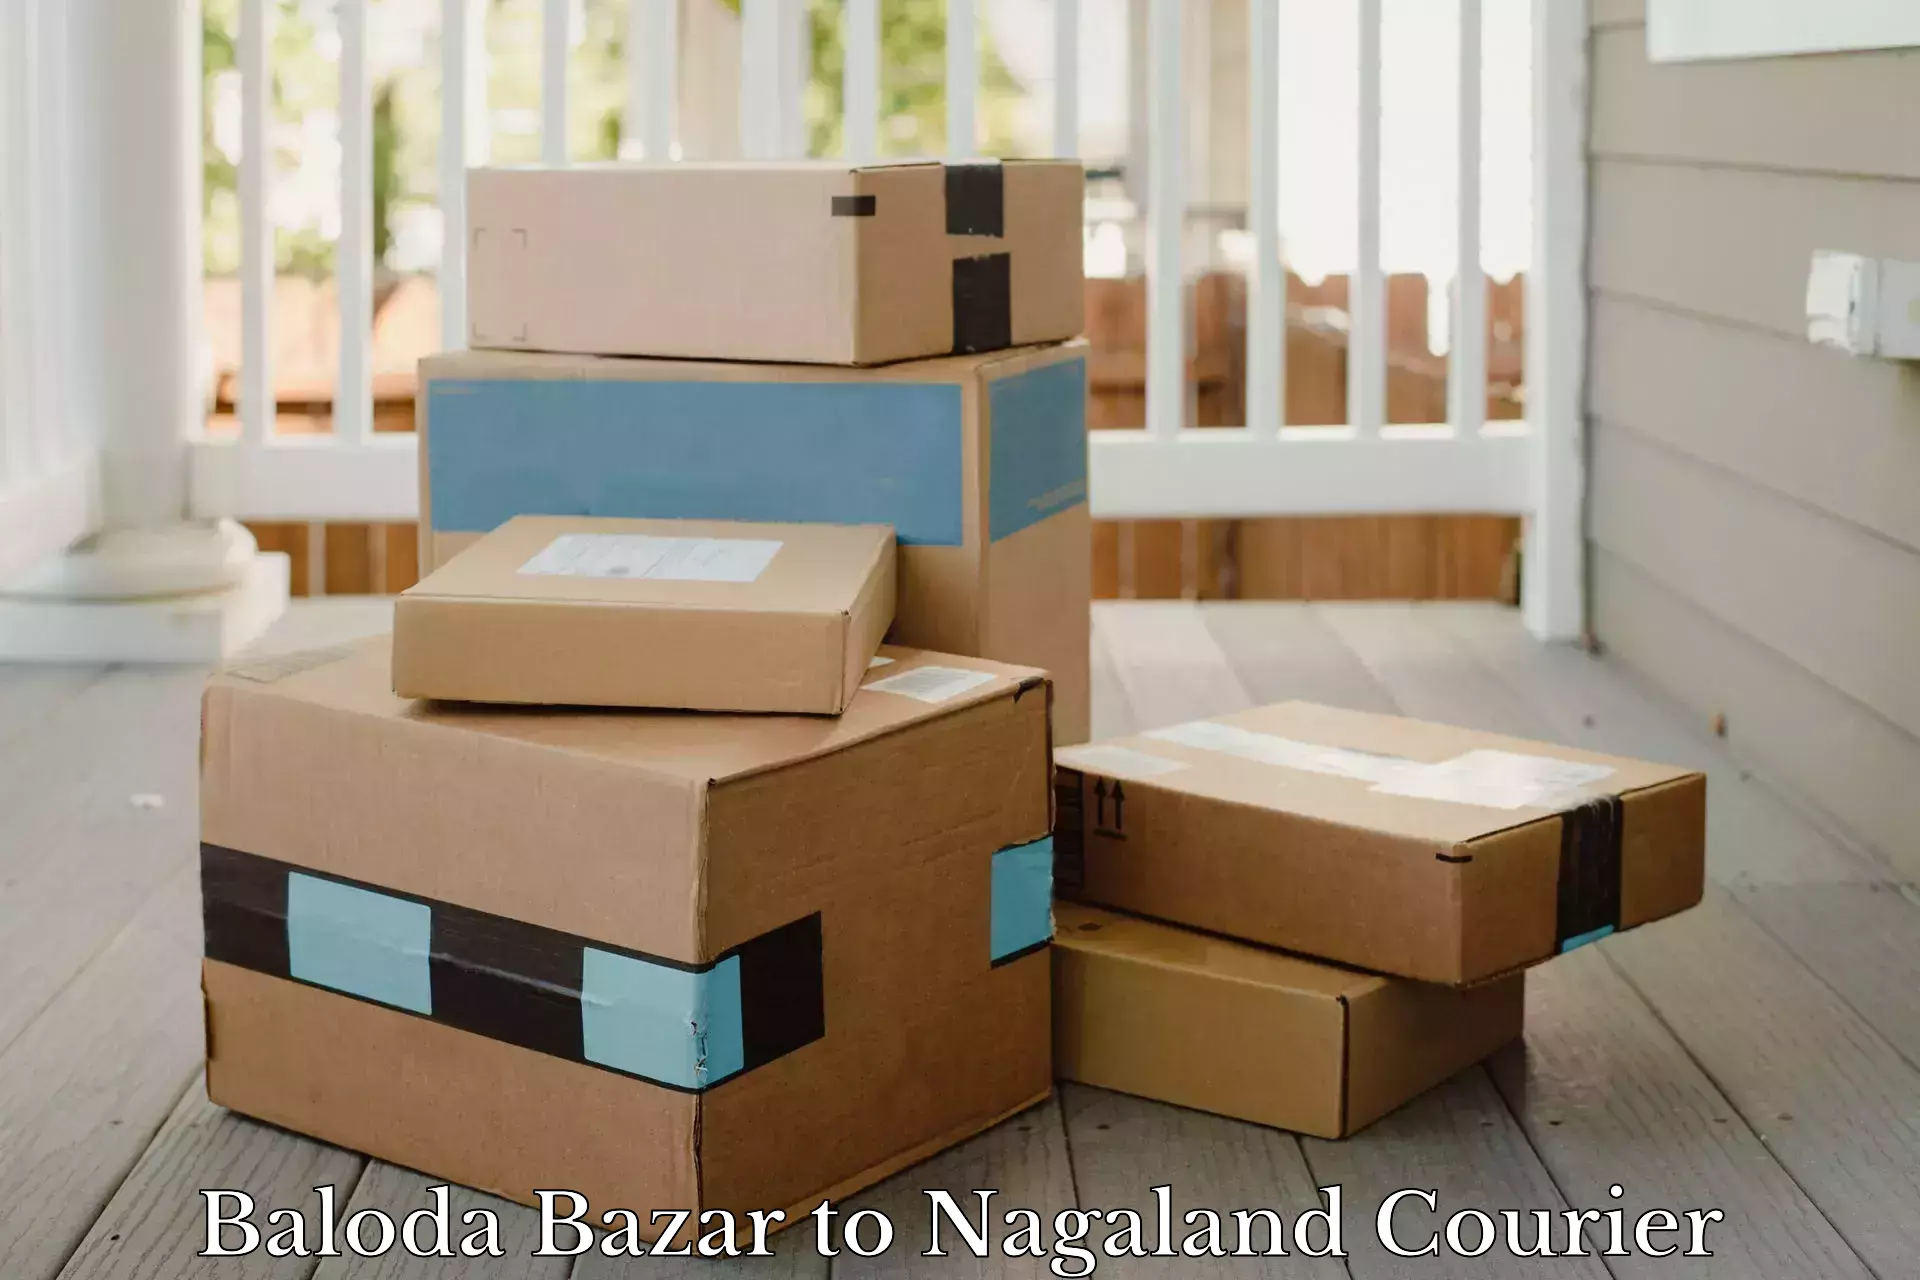 Courier service efficiency Baloda Bazar to Nagaland